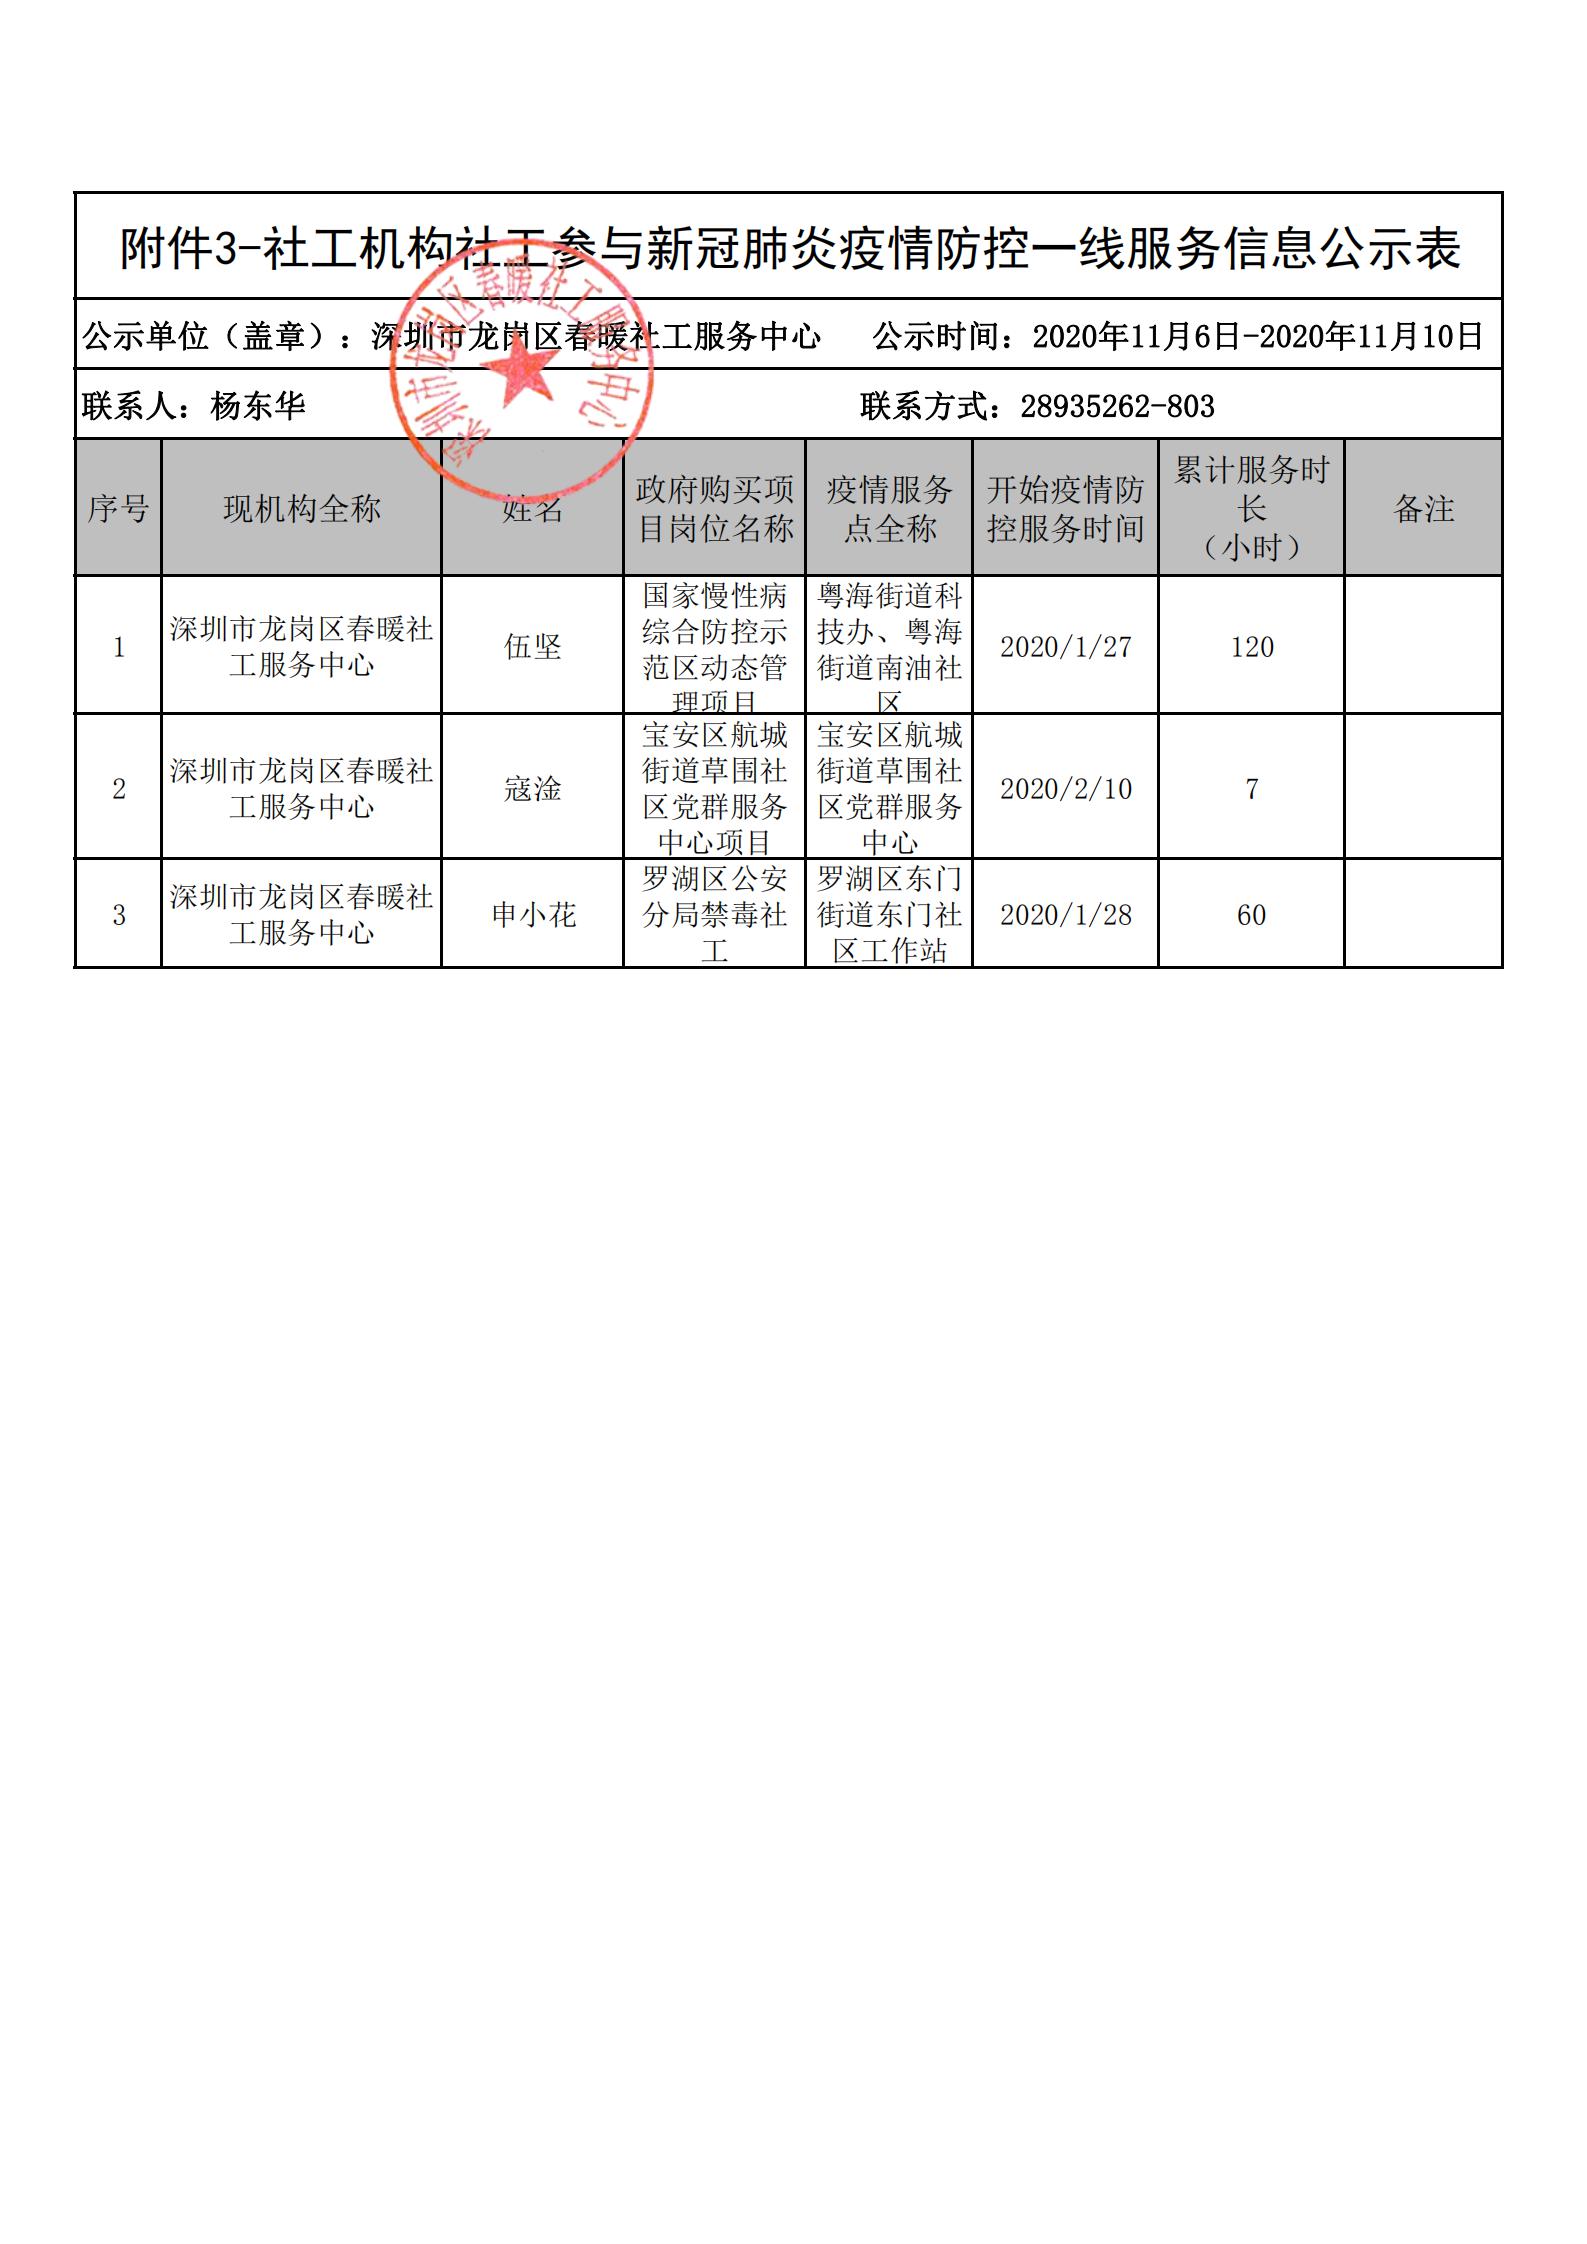 深圳市社工参与新冠肺炎疫情防控一线服务个人信息公示（第二批）+增加3人公示（春暖社工）